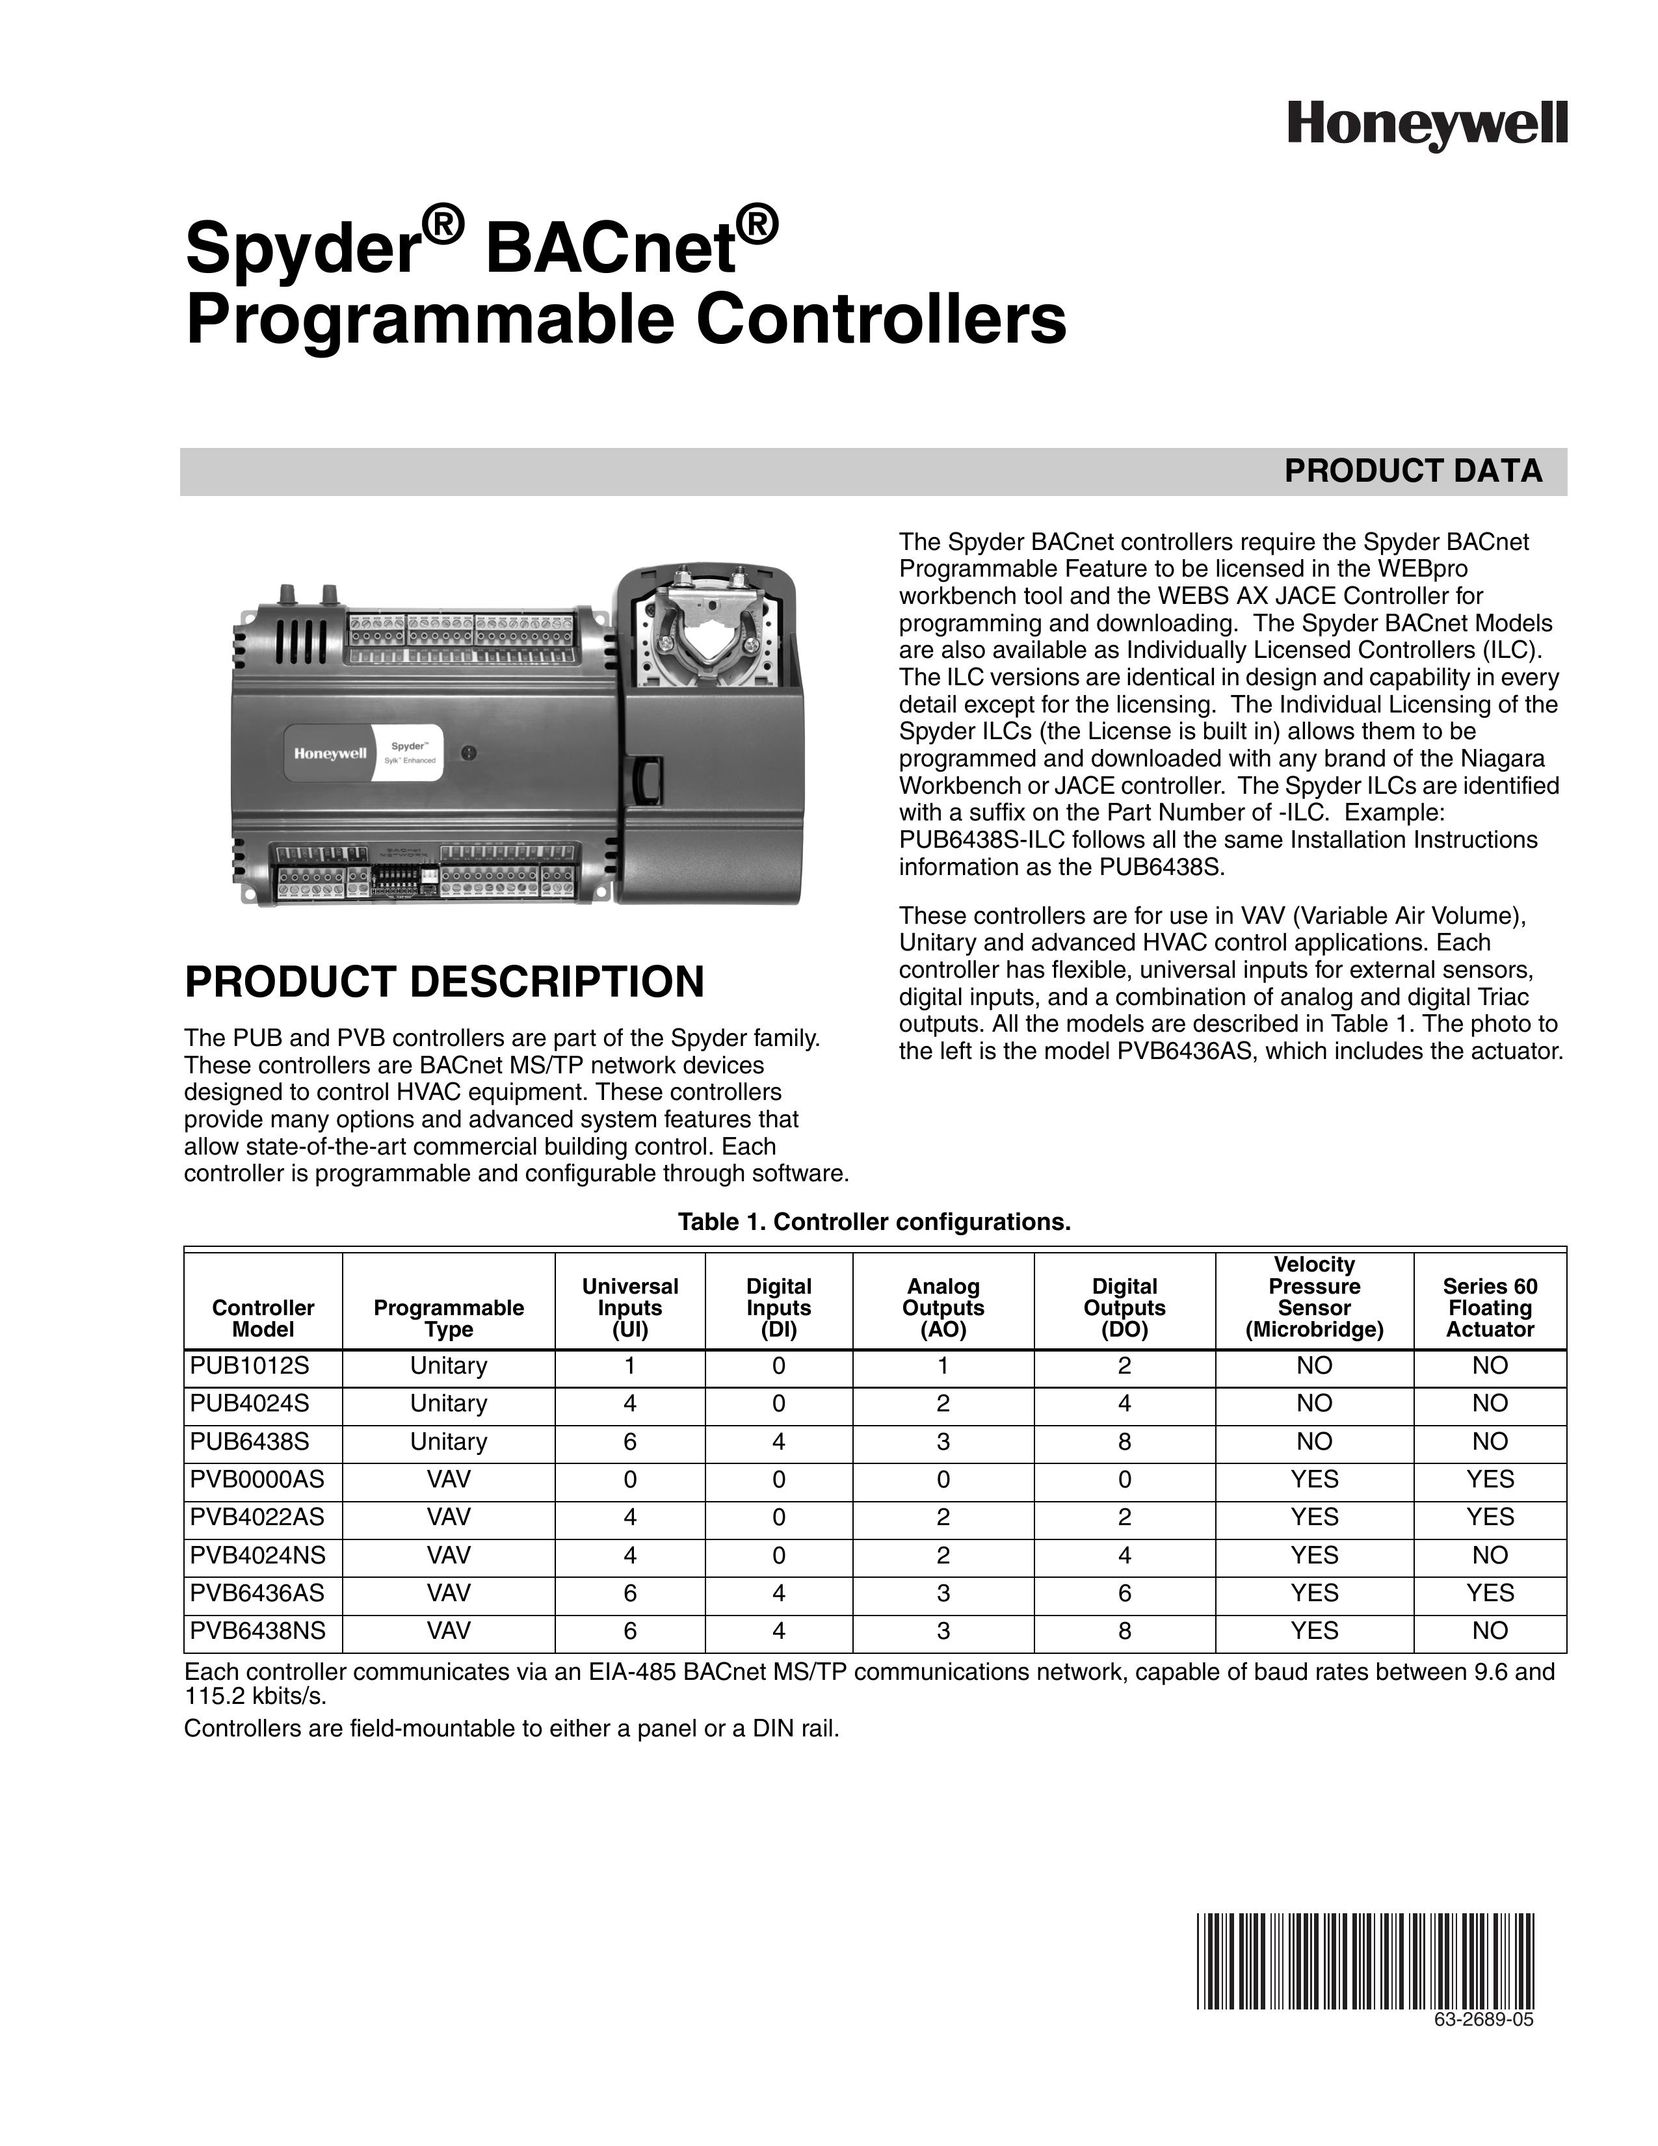 Honeywell PUB4024S Universal Remote User Manual